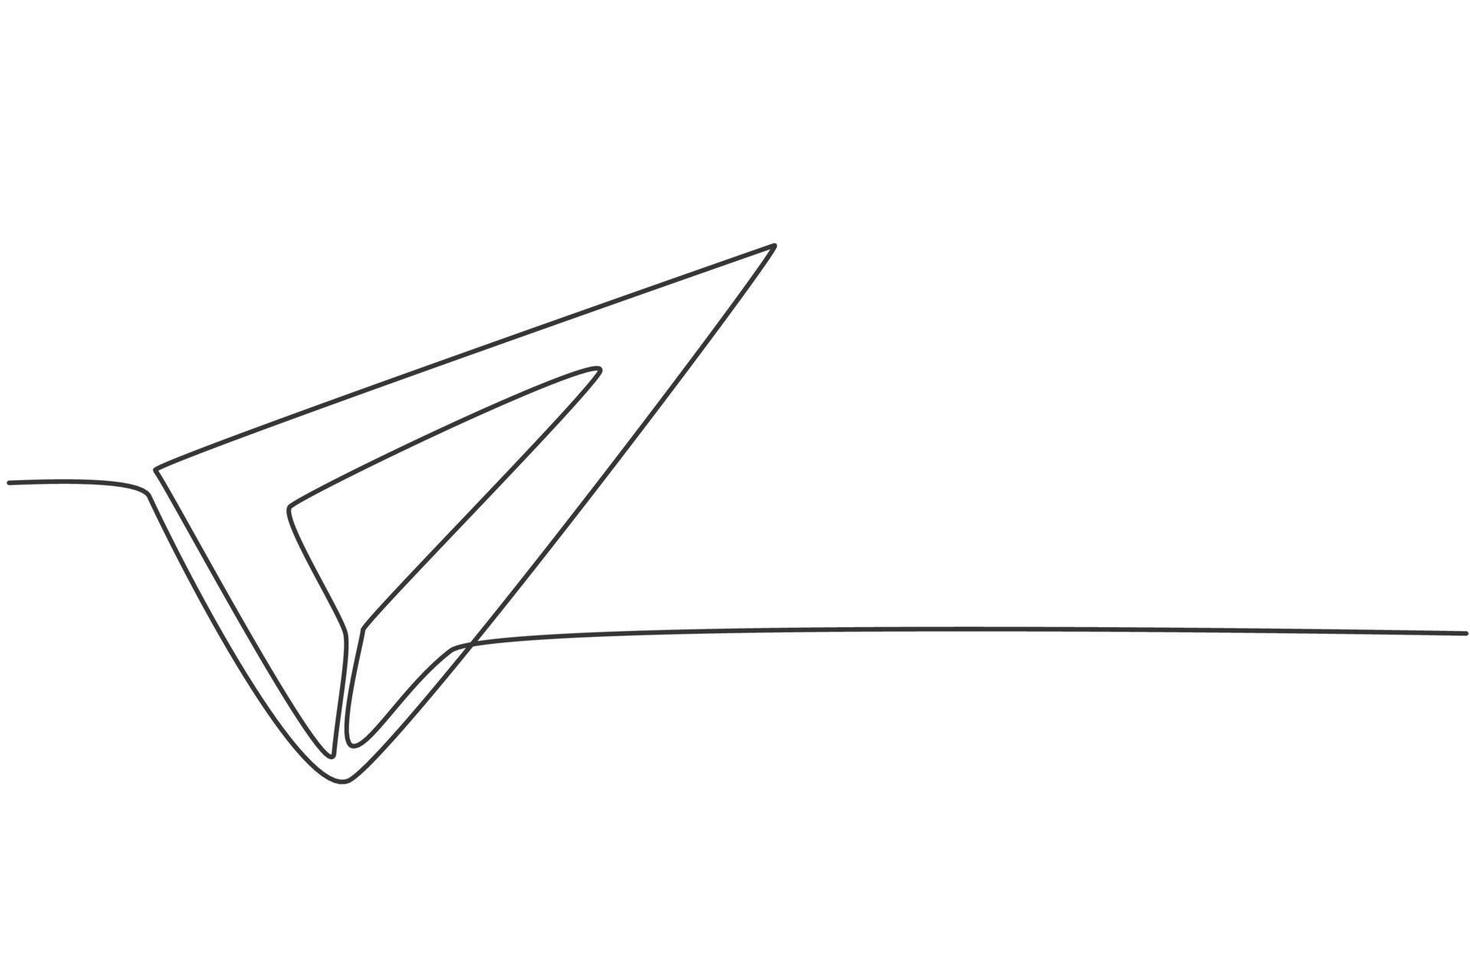 Regla triangular de acero inoxidable de dibujo continuo de una línea. herramienta de medición para medir la longitud. regreso a la escuela concepto mínimo dibujado a mano. Diseño de dibujo de una sola línea para ilustración gráfica de vector de educación